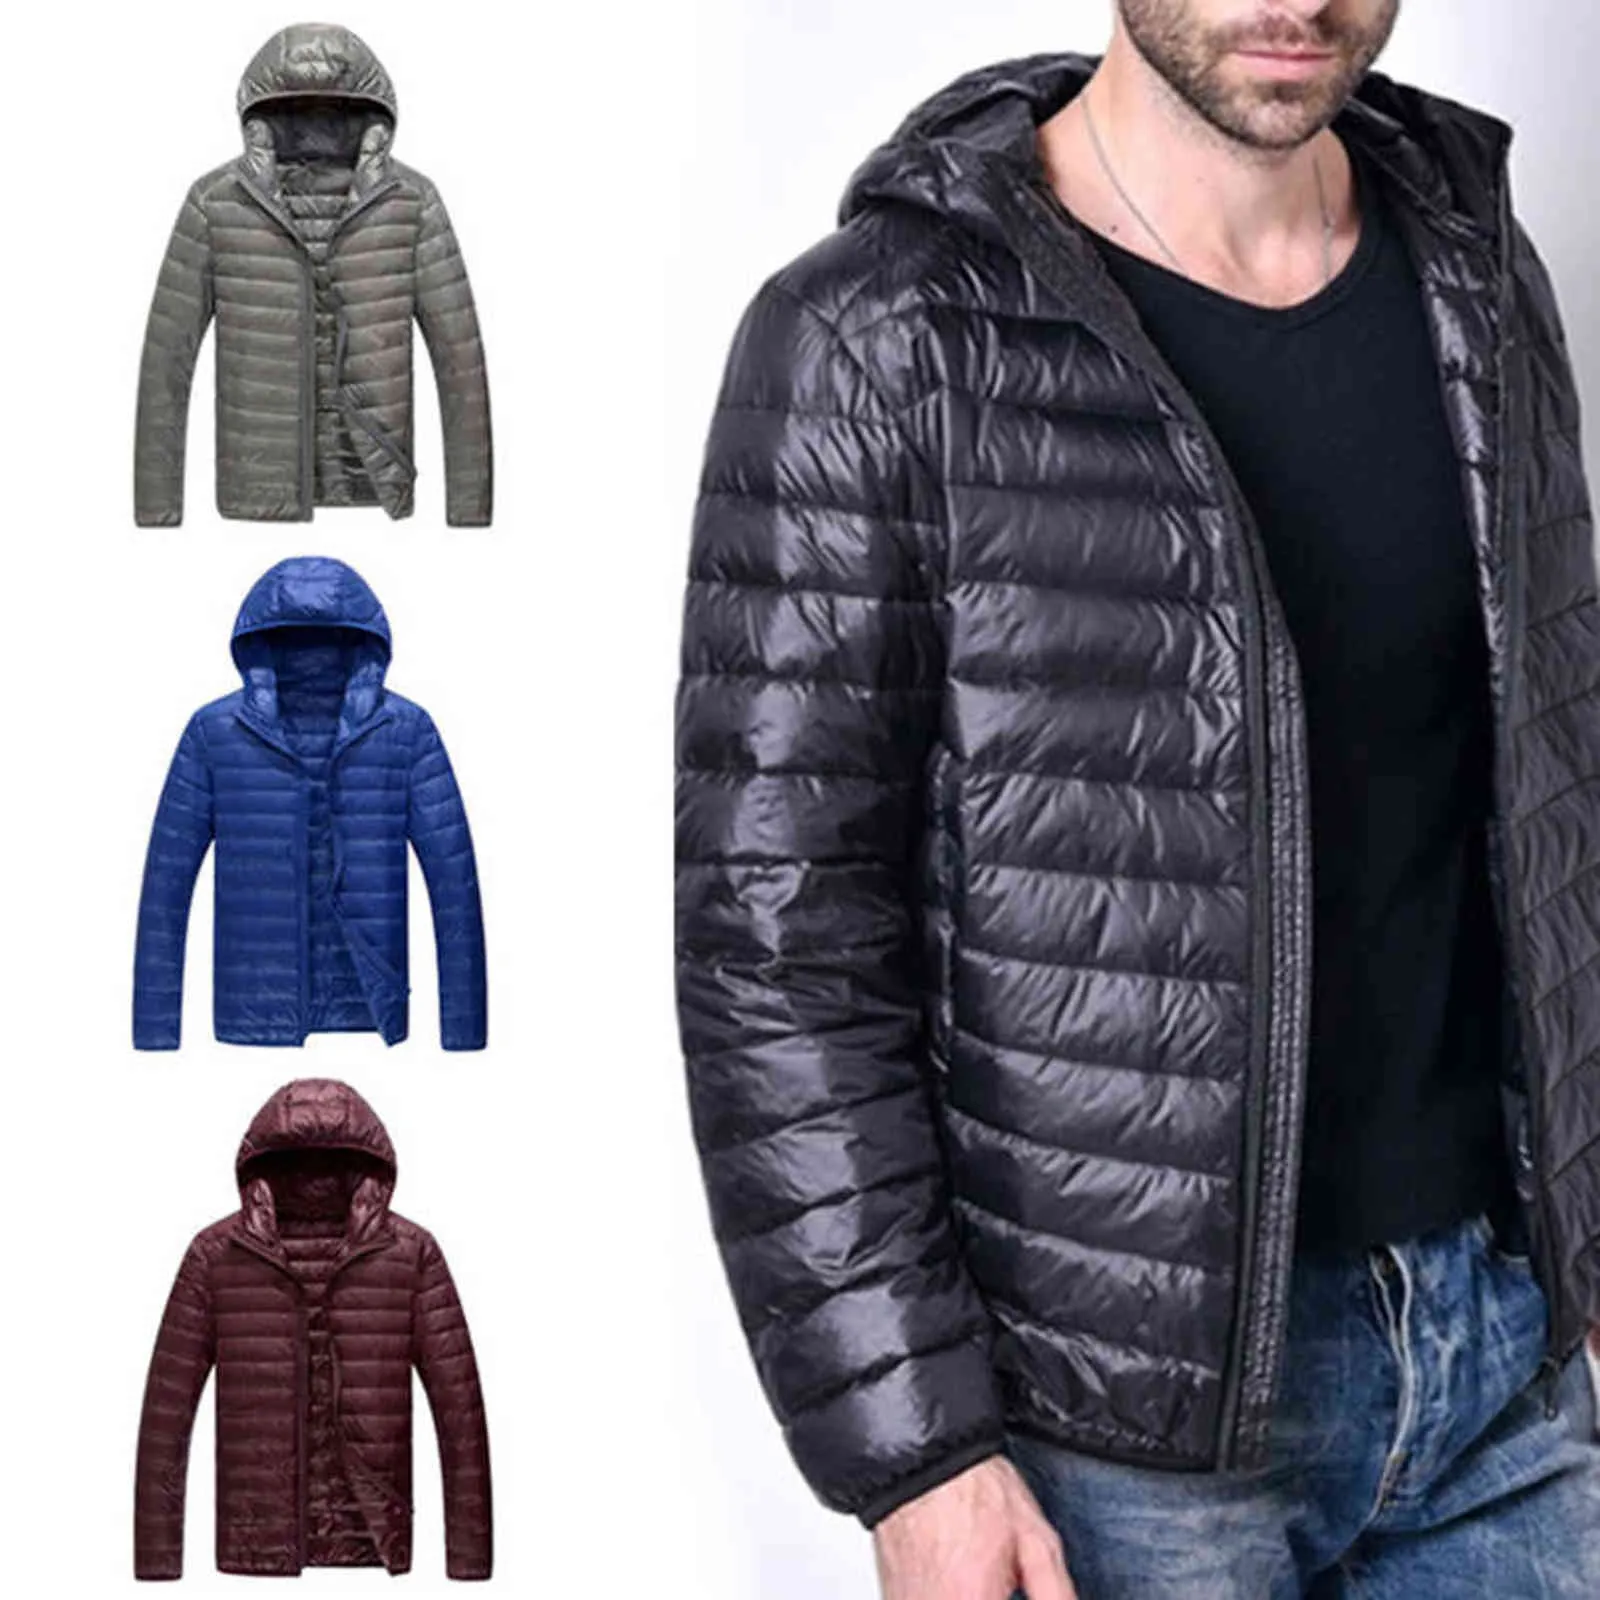 Hafif Kış Aşağı Ceket Erkekler Tüy Kapşonlu Ceket Gençlik Slim Fit Ceket Aşağı Ceketler Yastıklı Dış Giyim 2021 Y1103